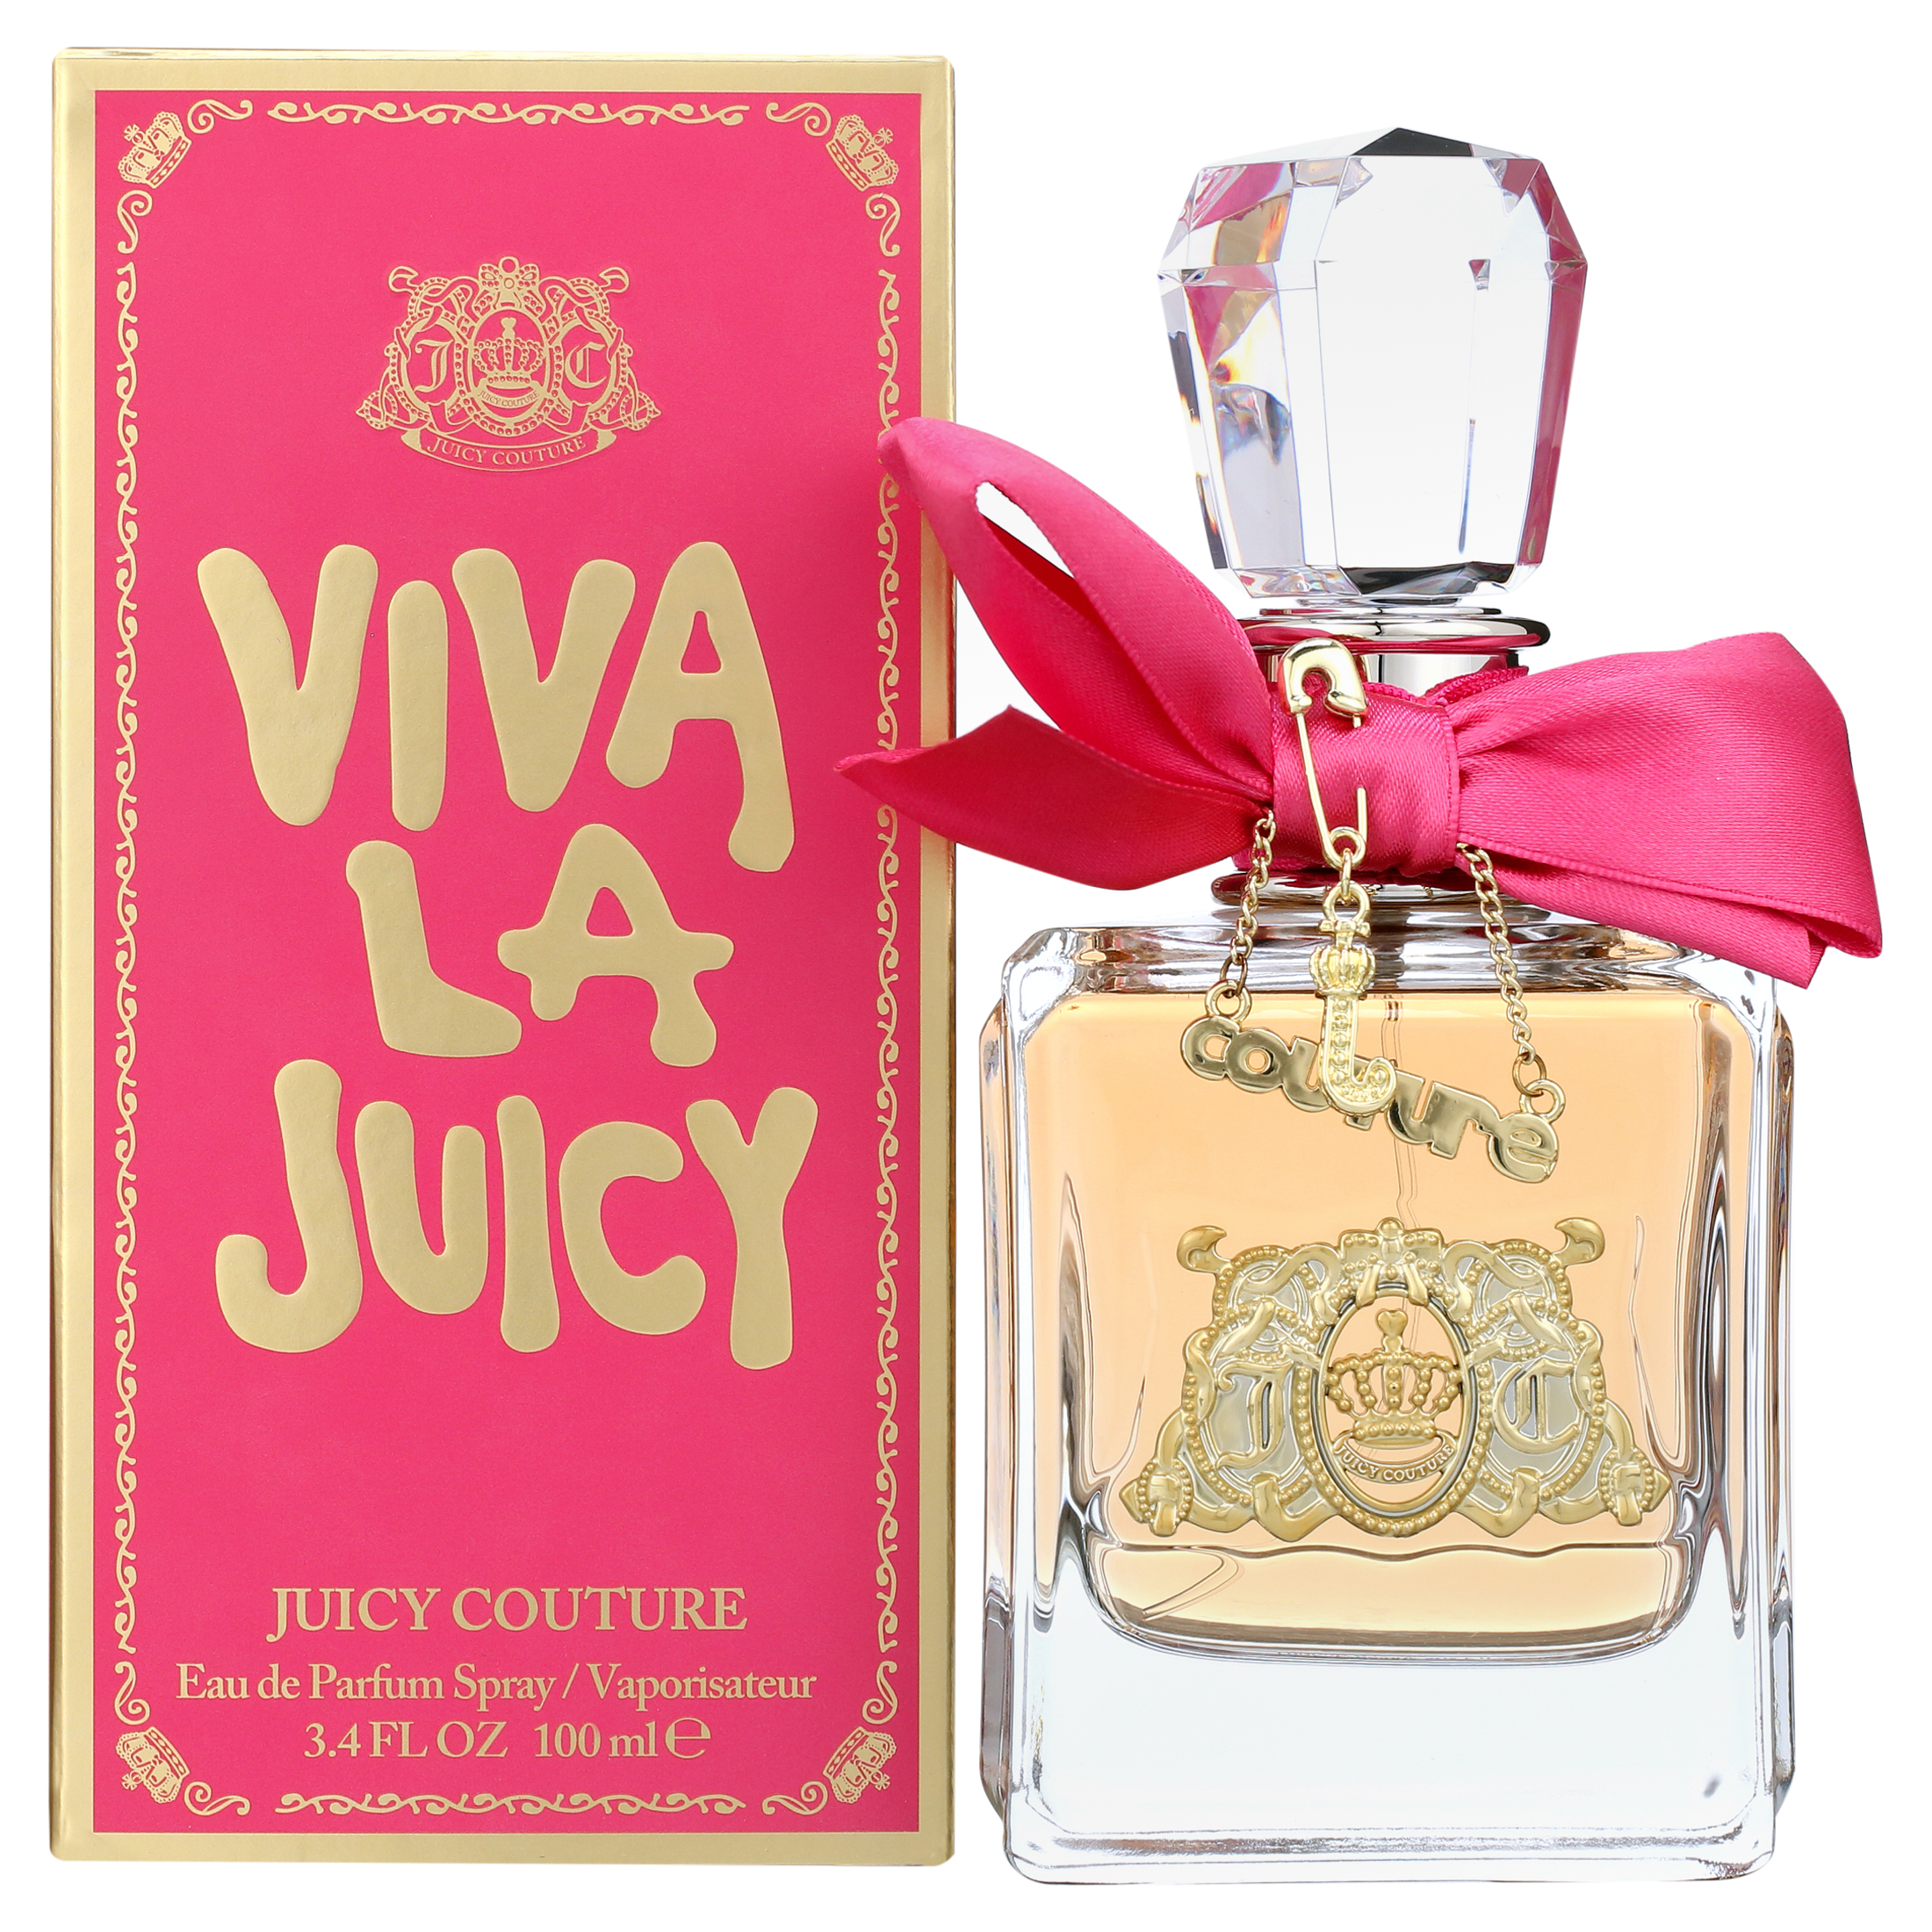 Juicy Couture Viva La Juicy Eau de Parfum Perfume for Women, 3.4 oz - image 1 of 7